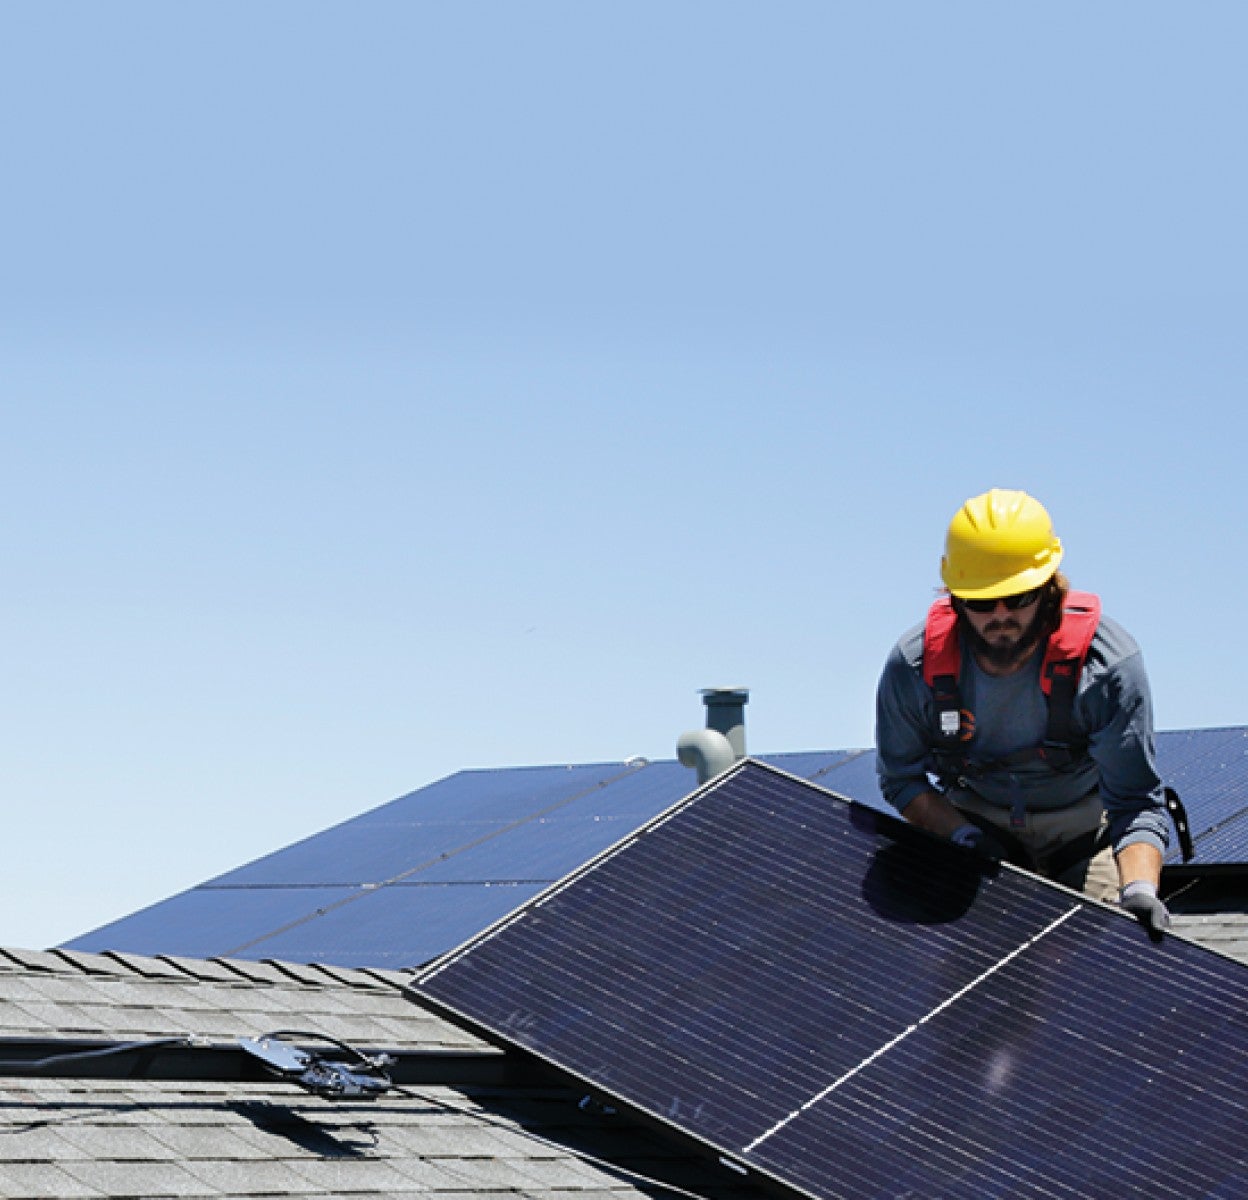 Installer installing solar panels at roof